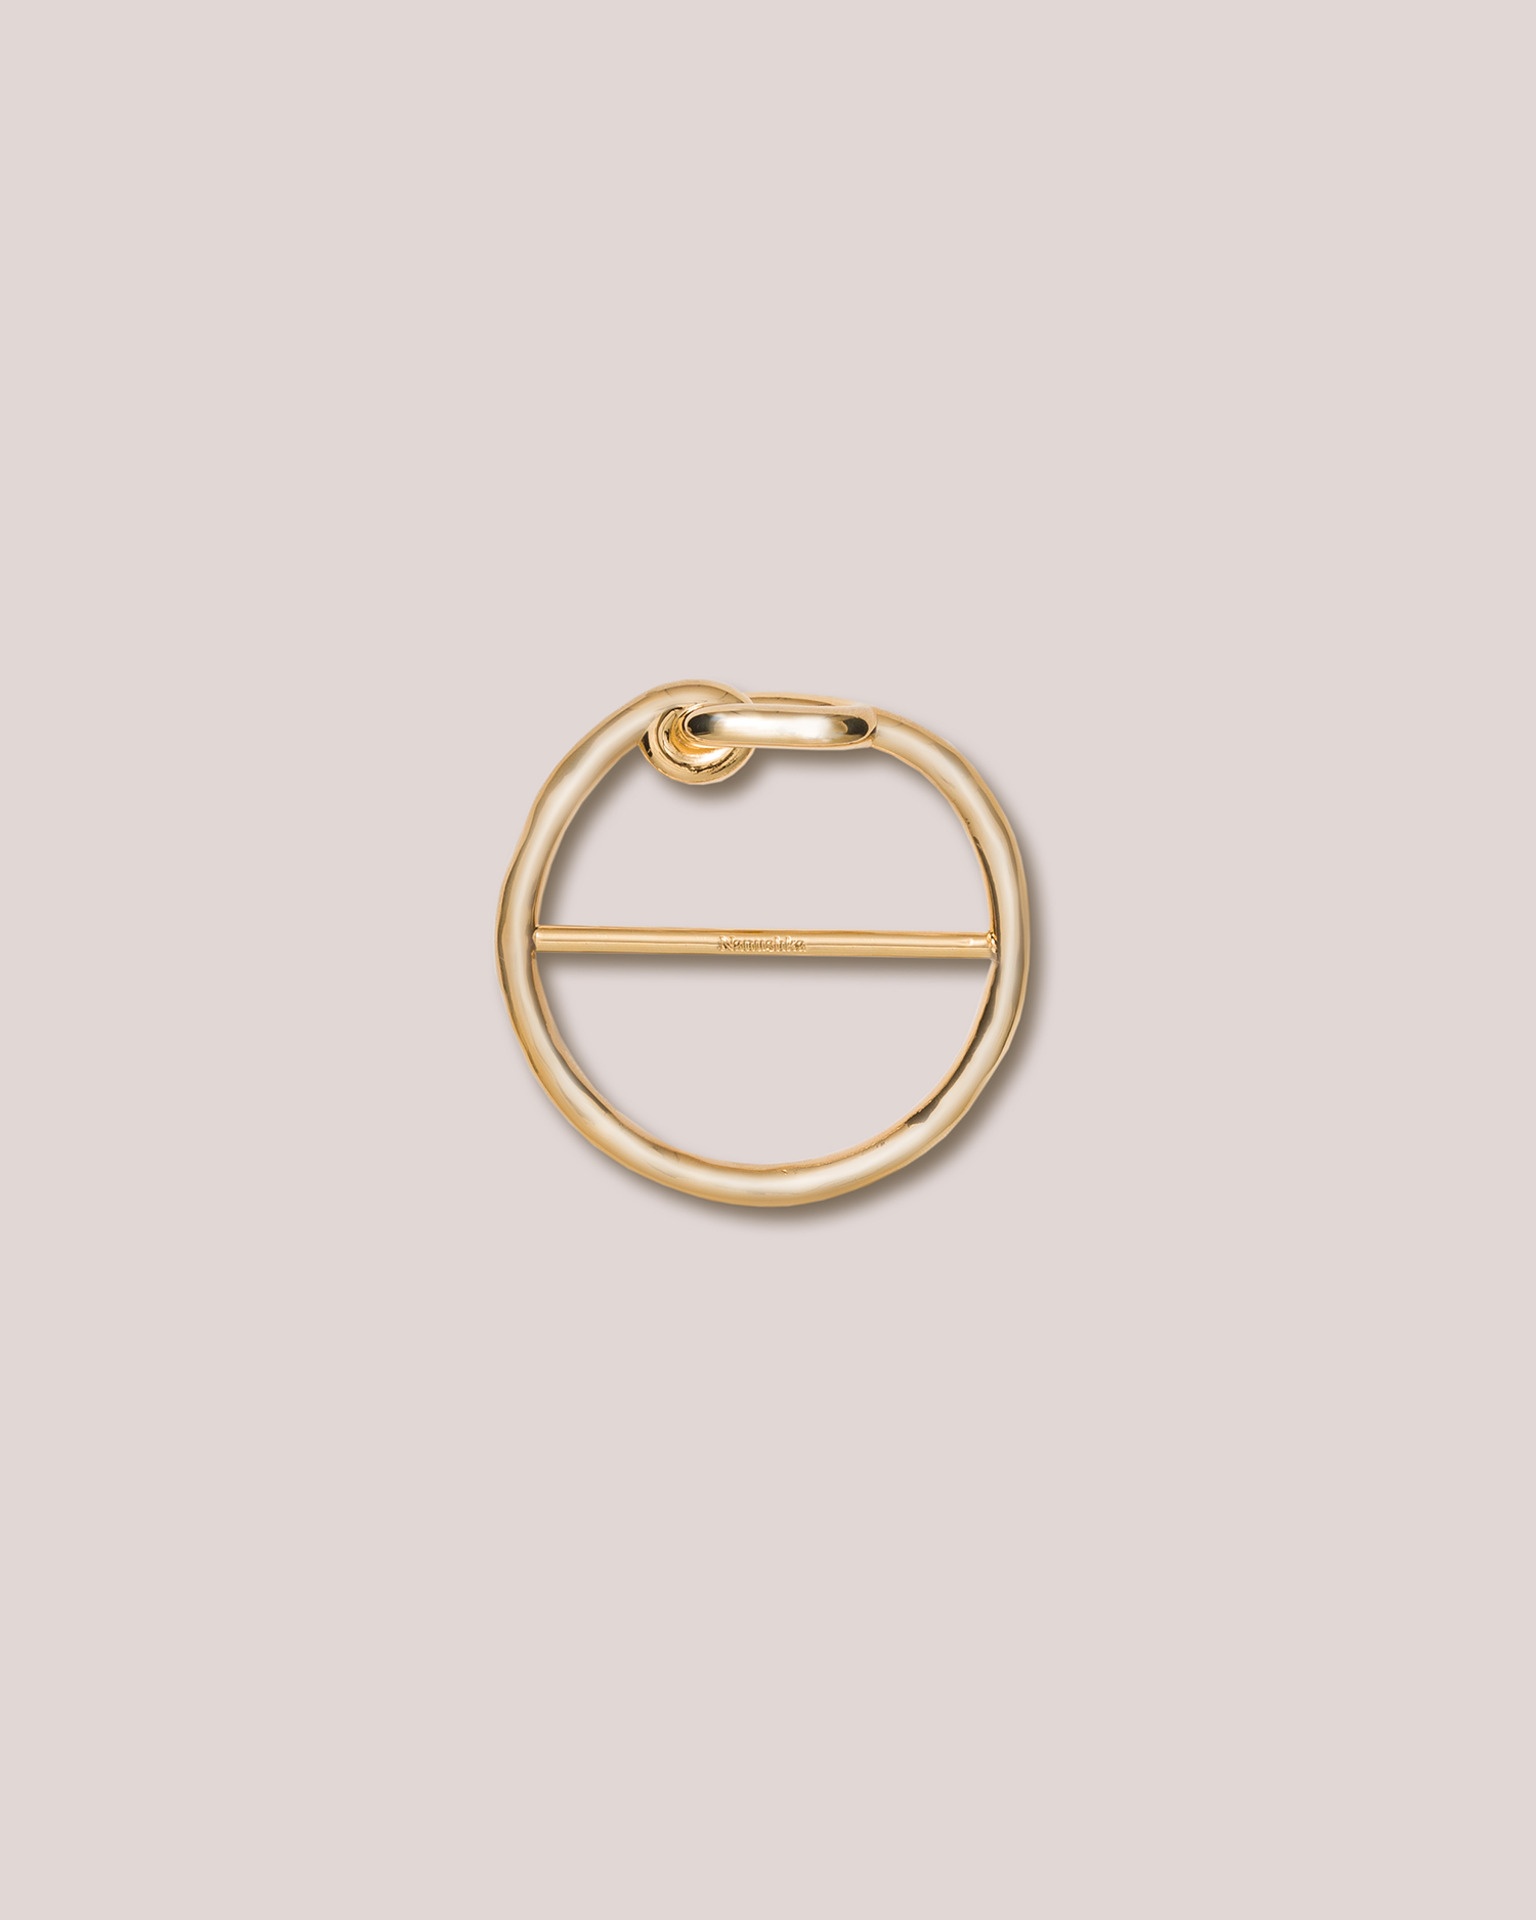 SCARF RING - Gold-tone metal scarf ring - 1